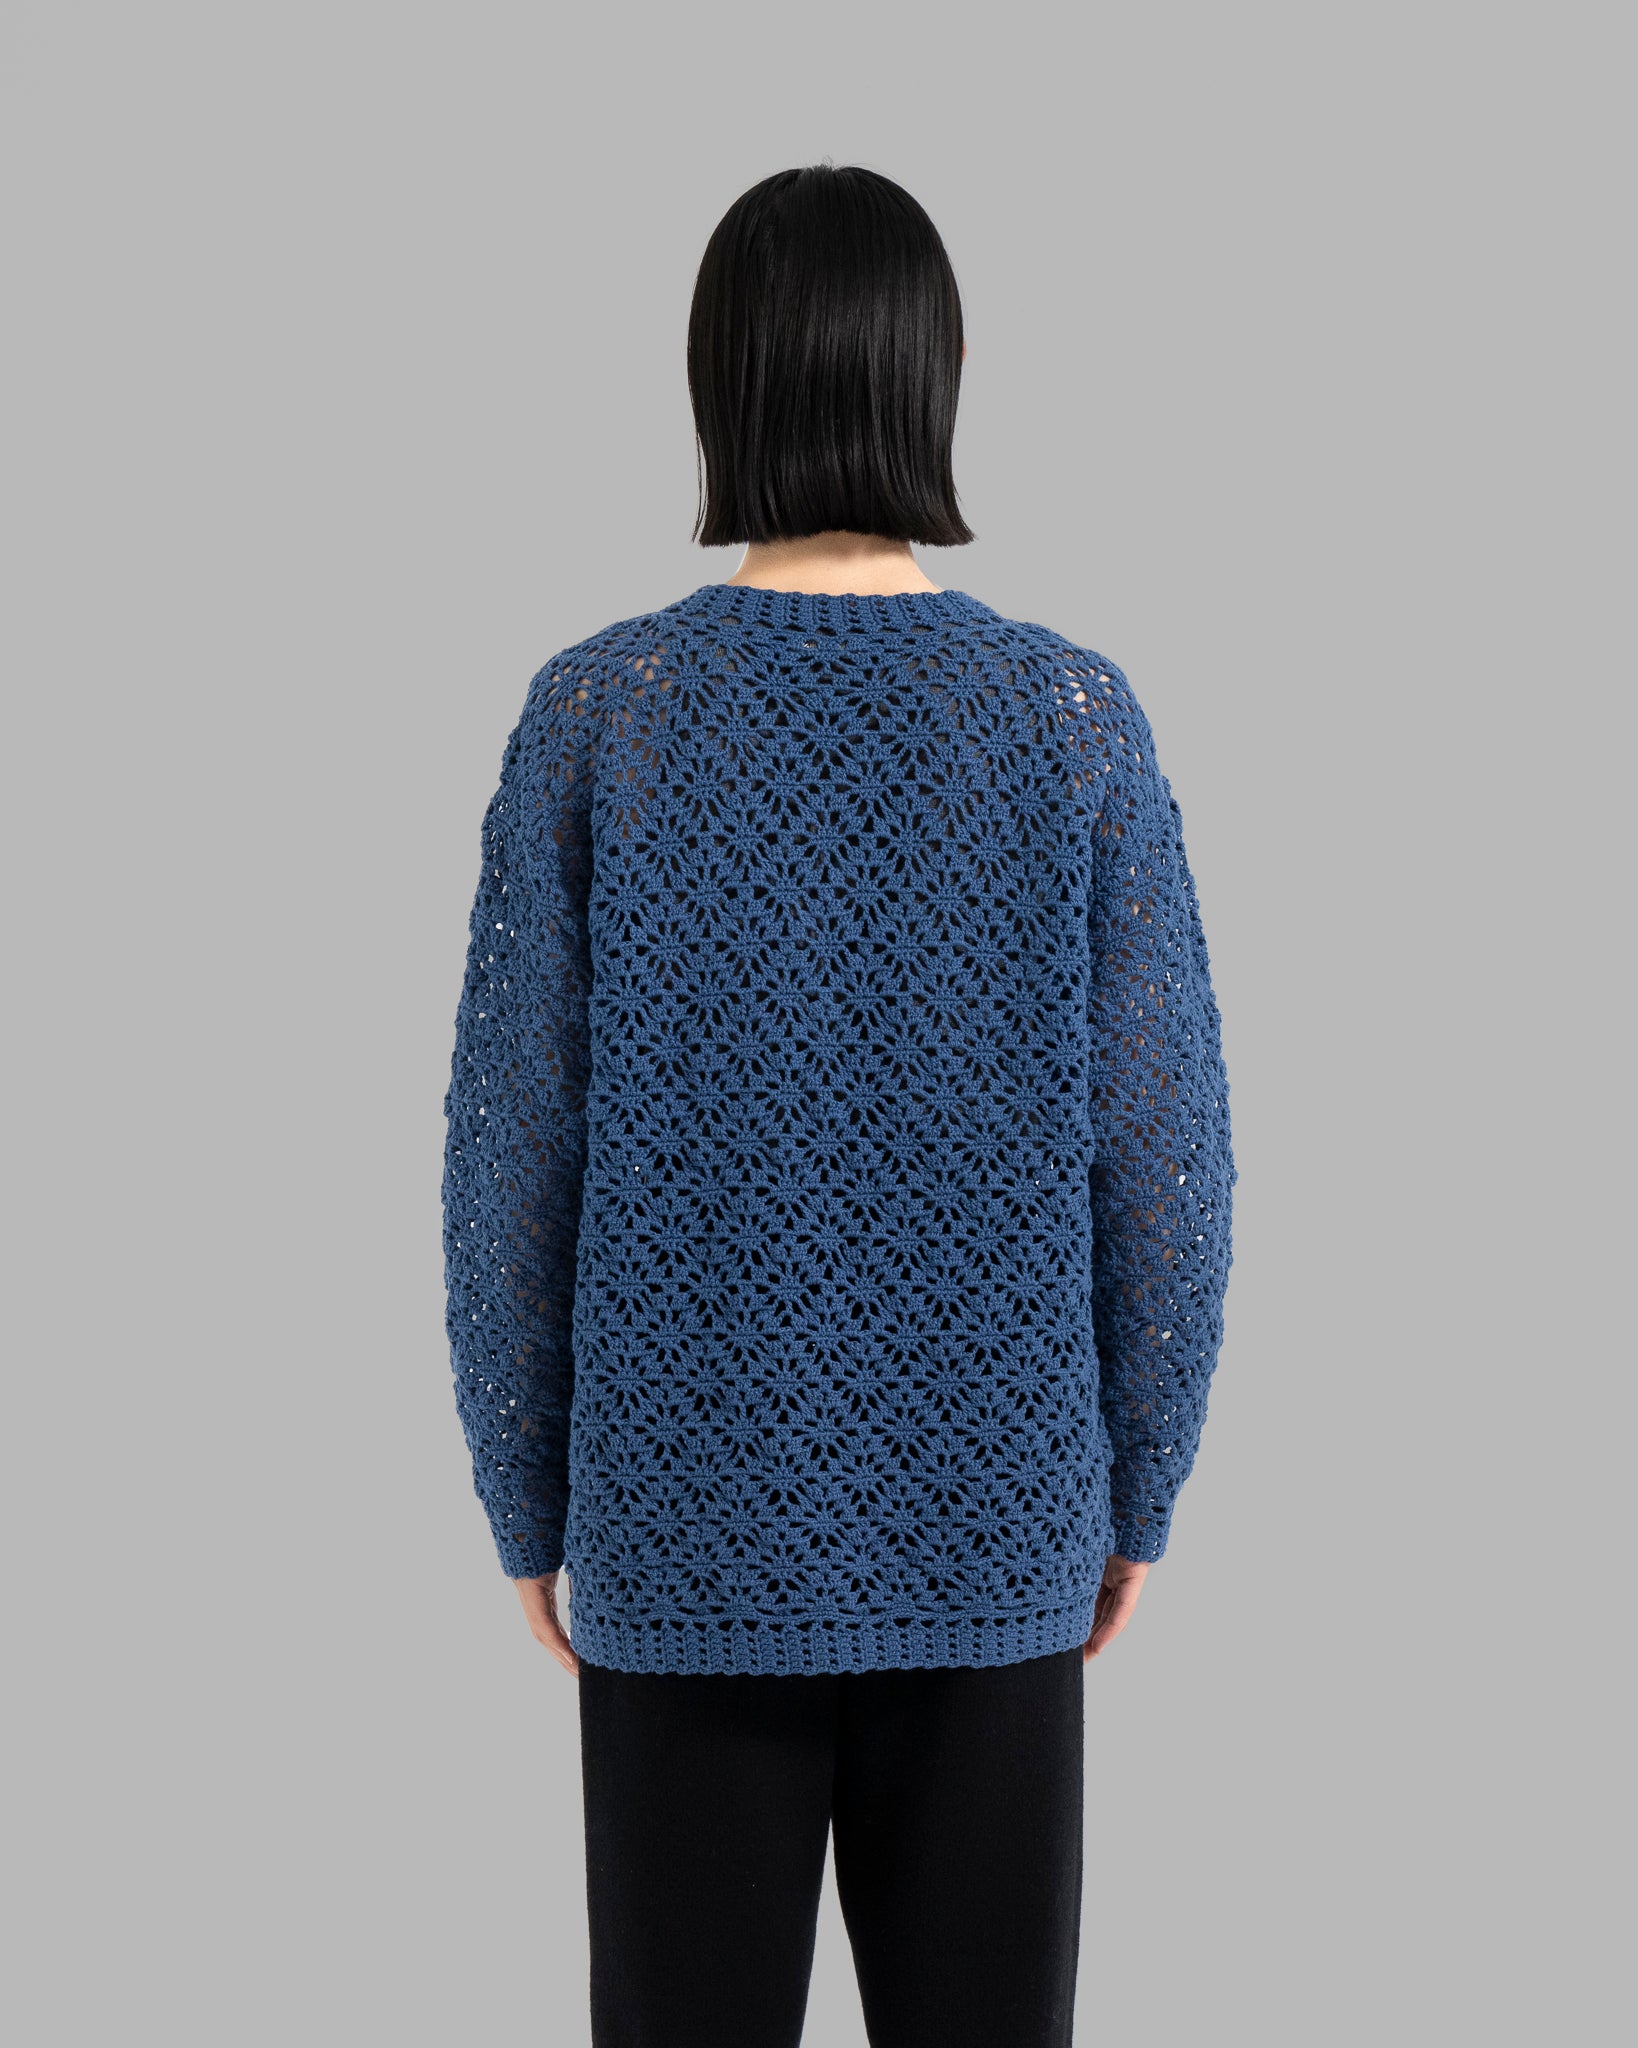 Crochet Hand Knit Pullover Sweater -Deep Blue